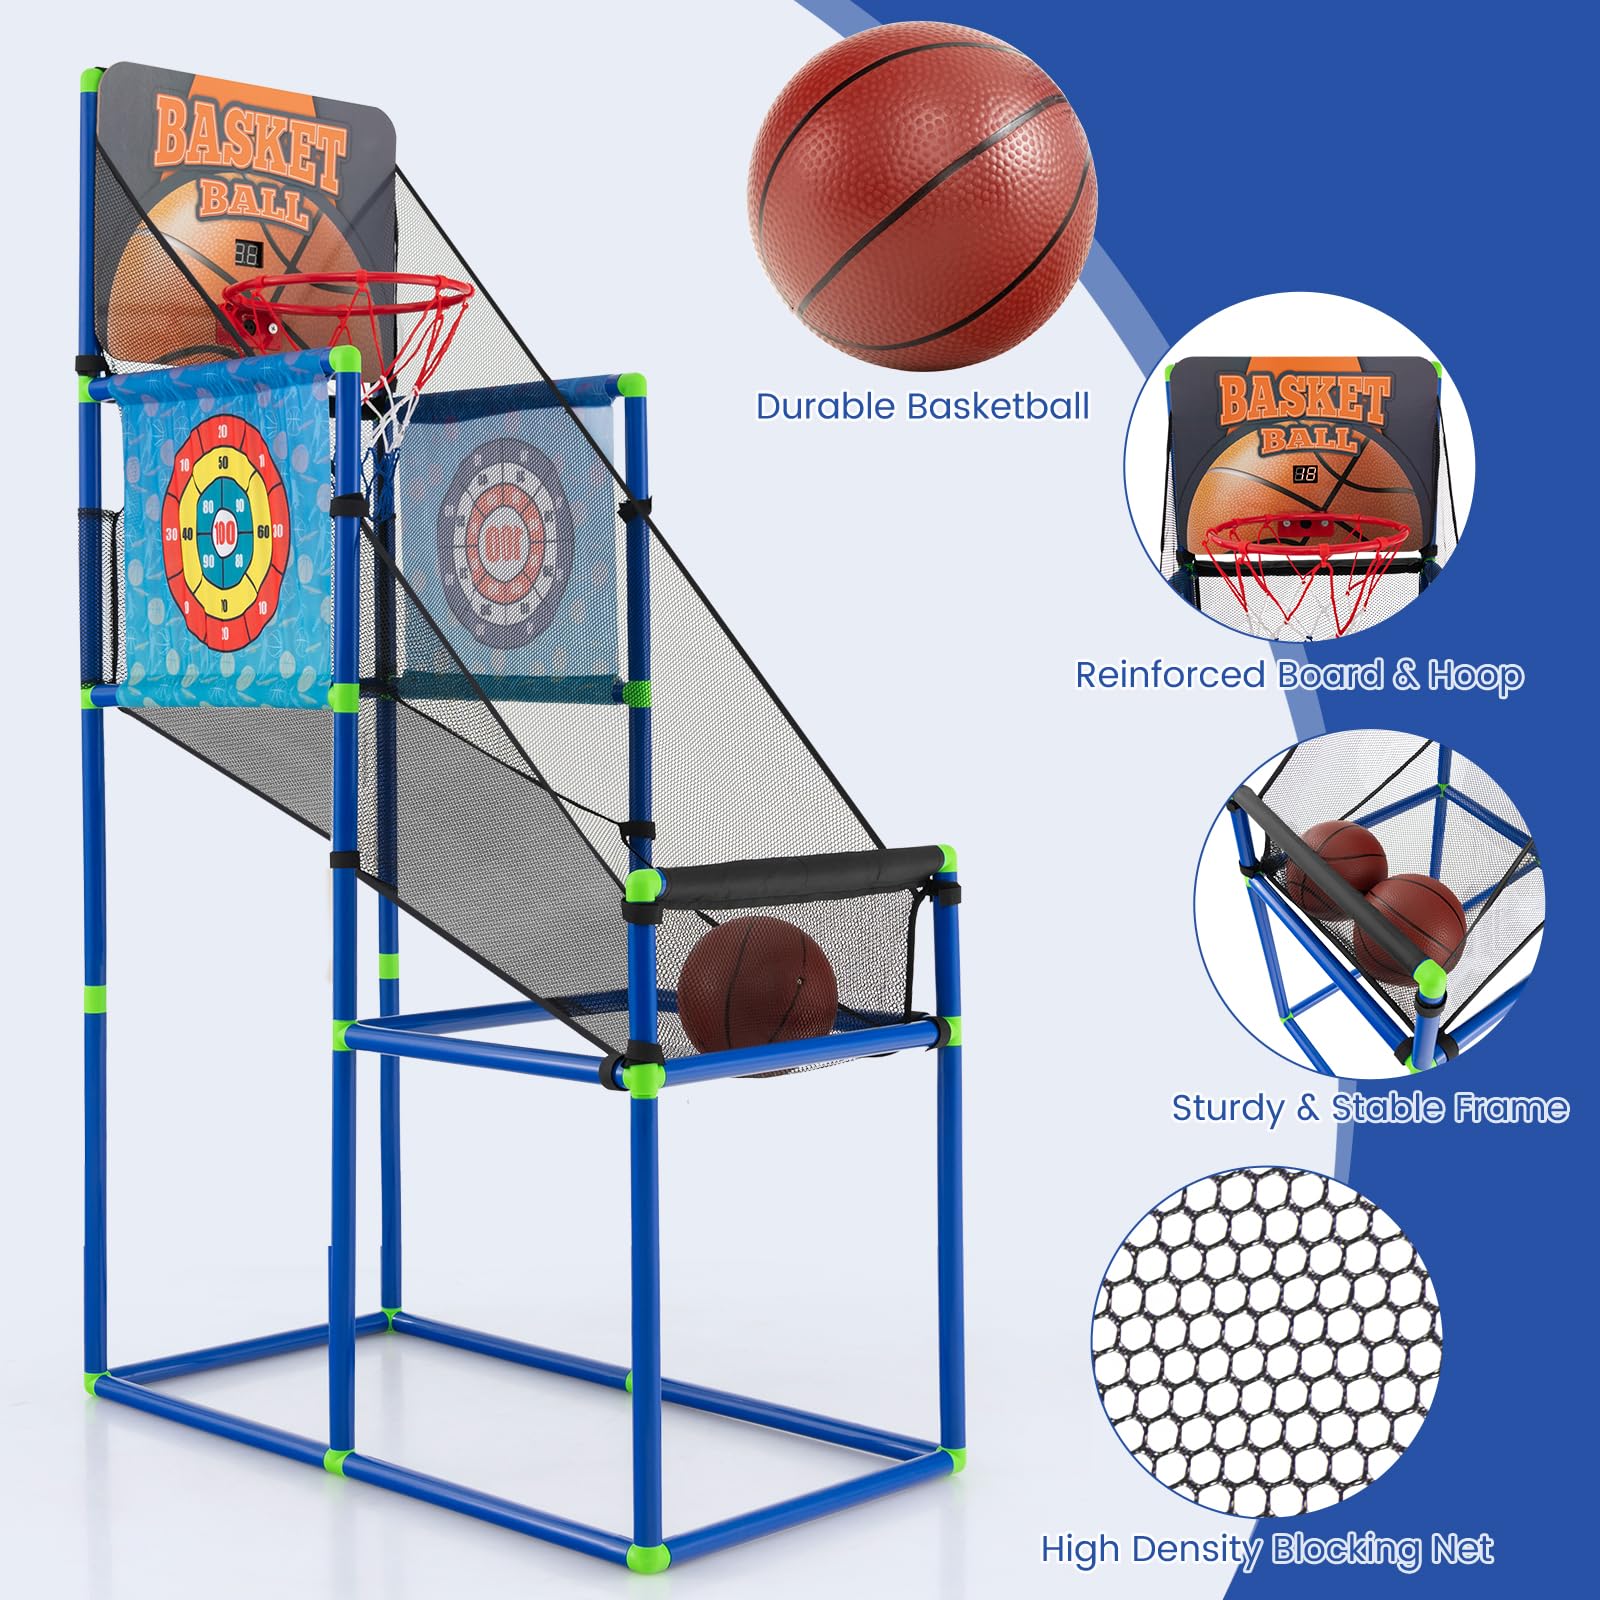 Giantex Kids Basketball Hoop Arcade Game, 2 in 1 Indoor Outdoor Arcade Basketball Game